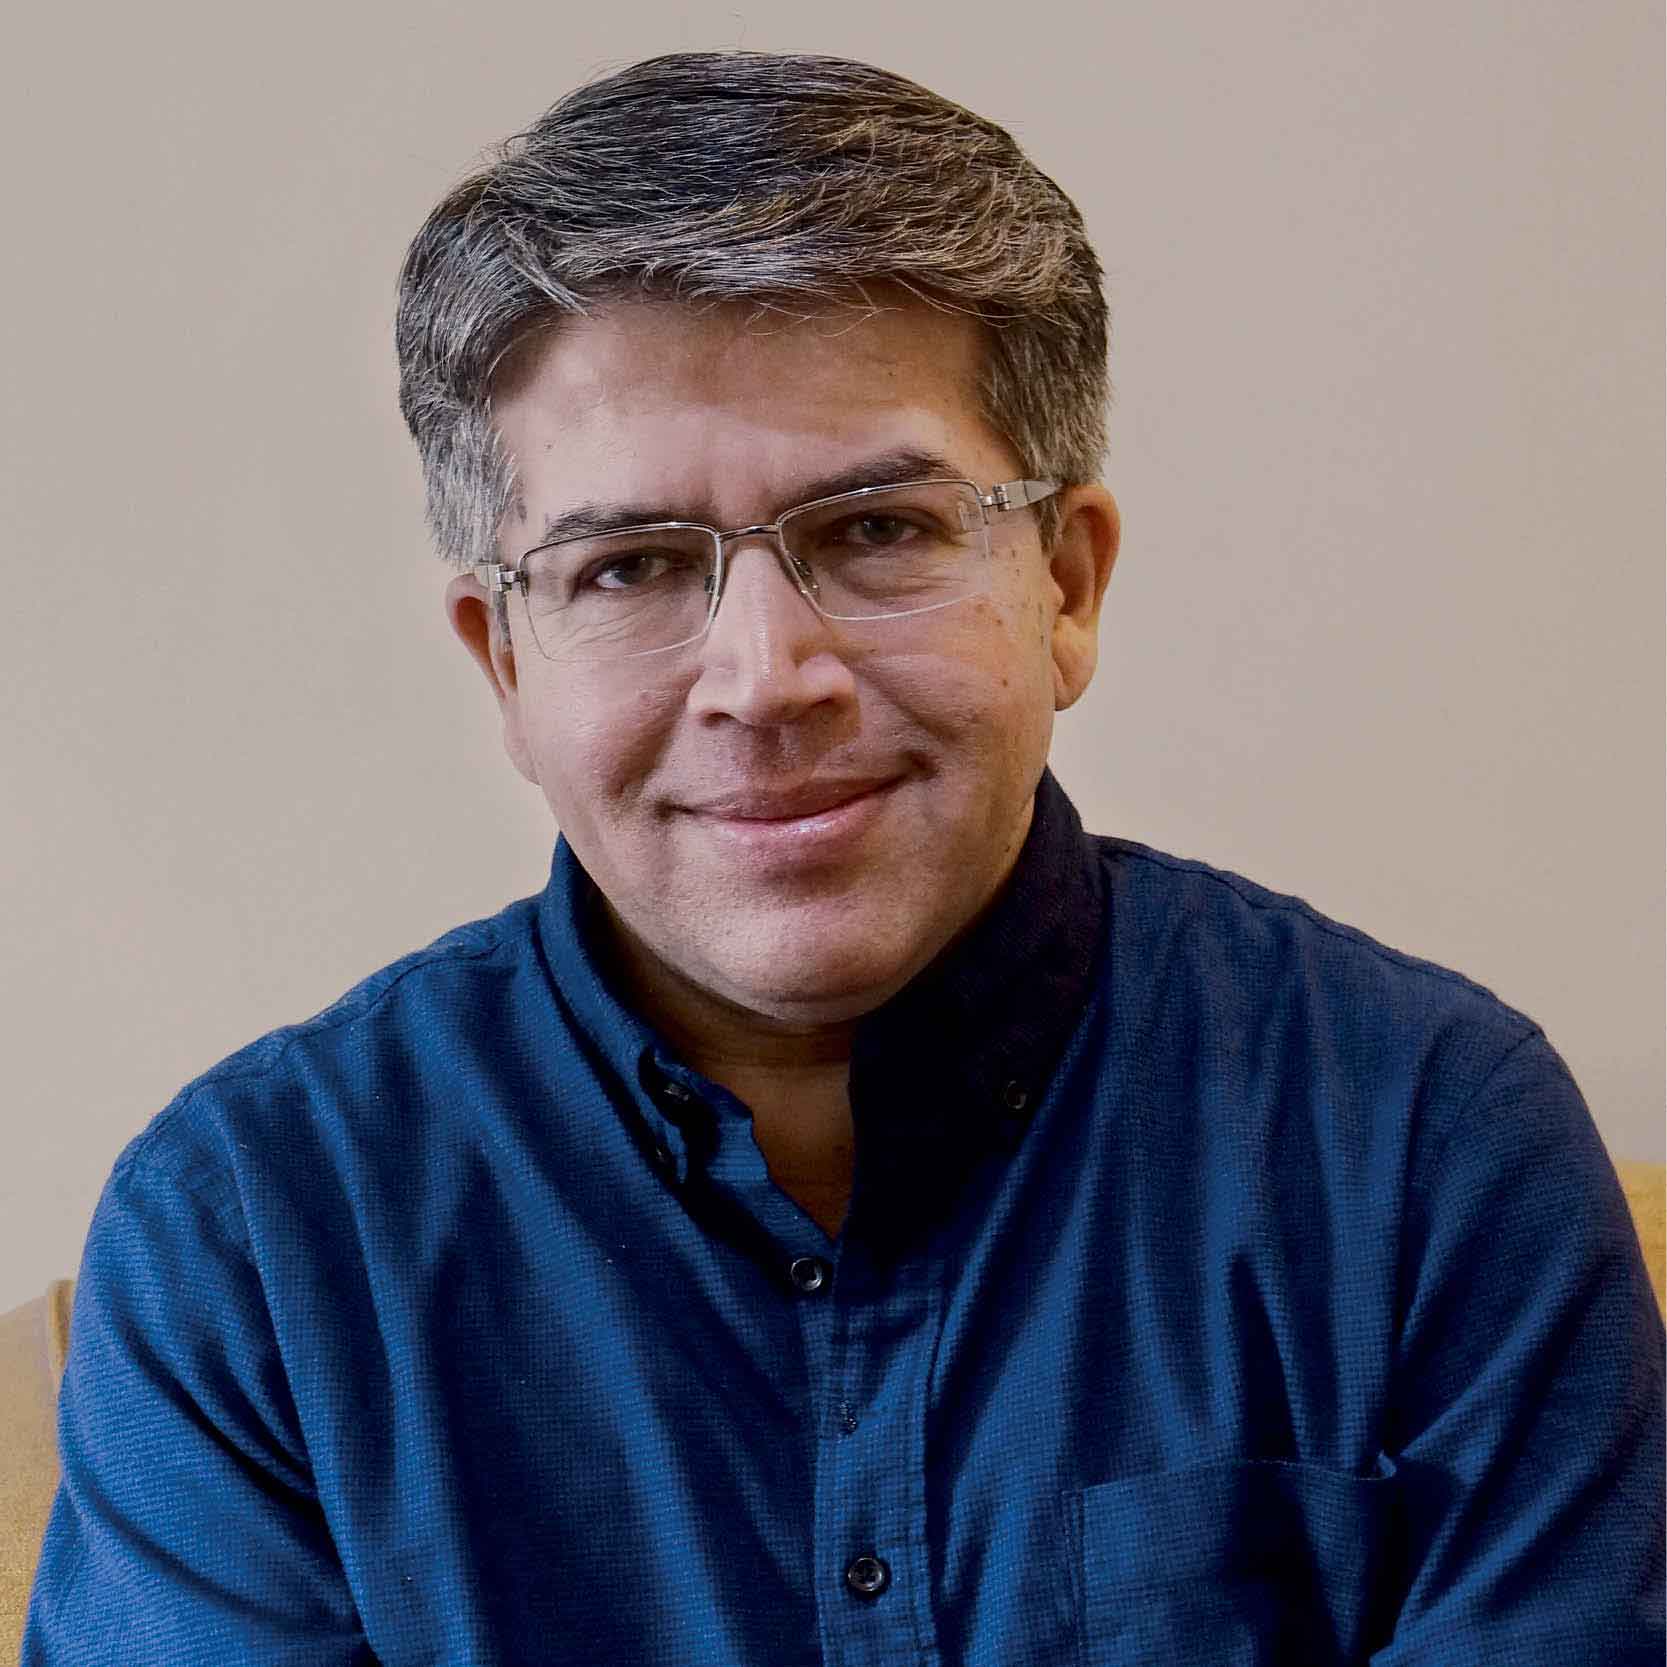 Author Rahul Jain